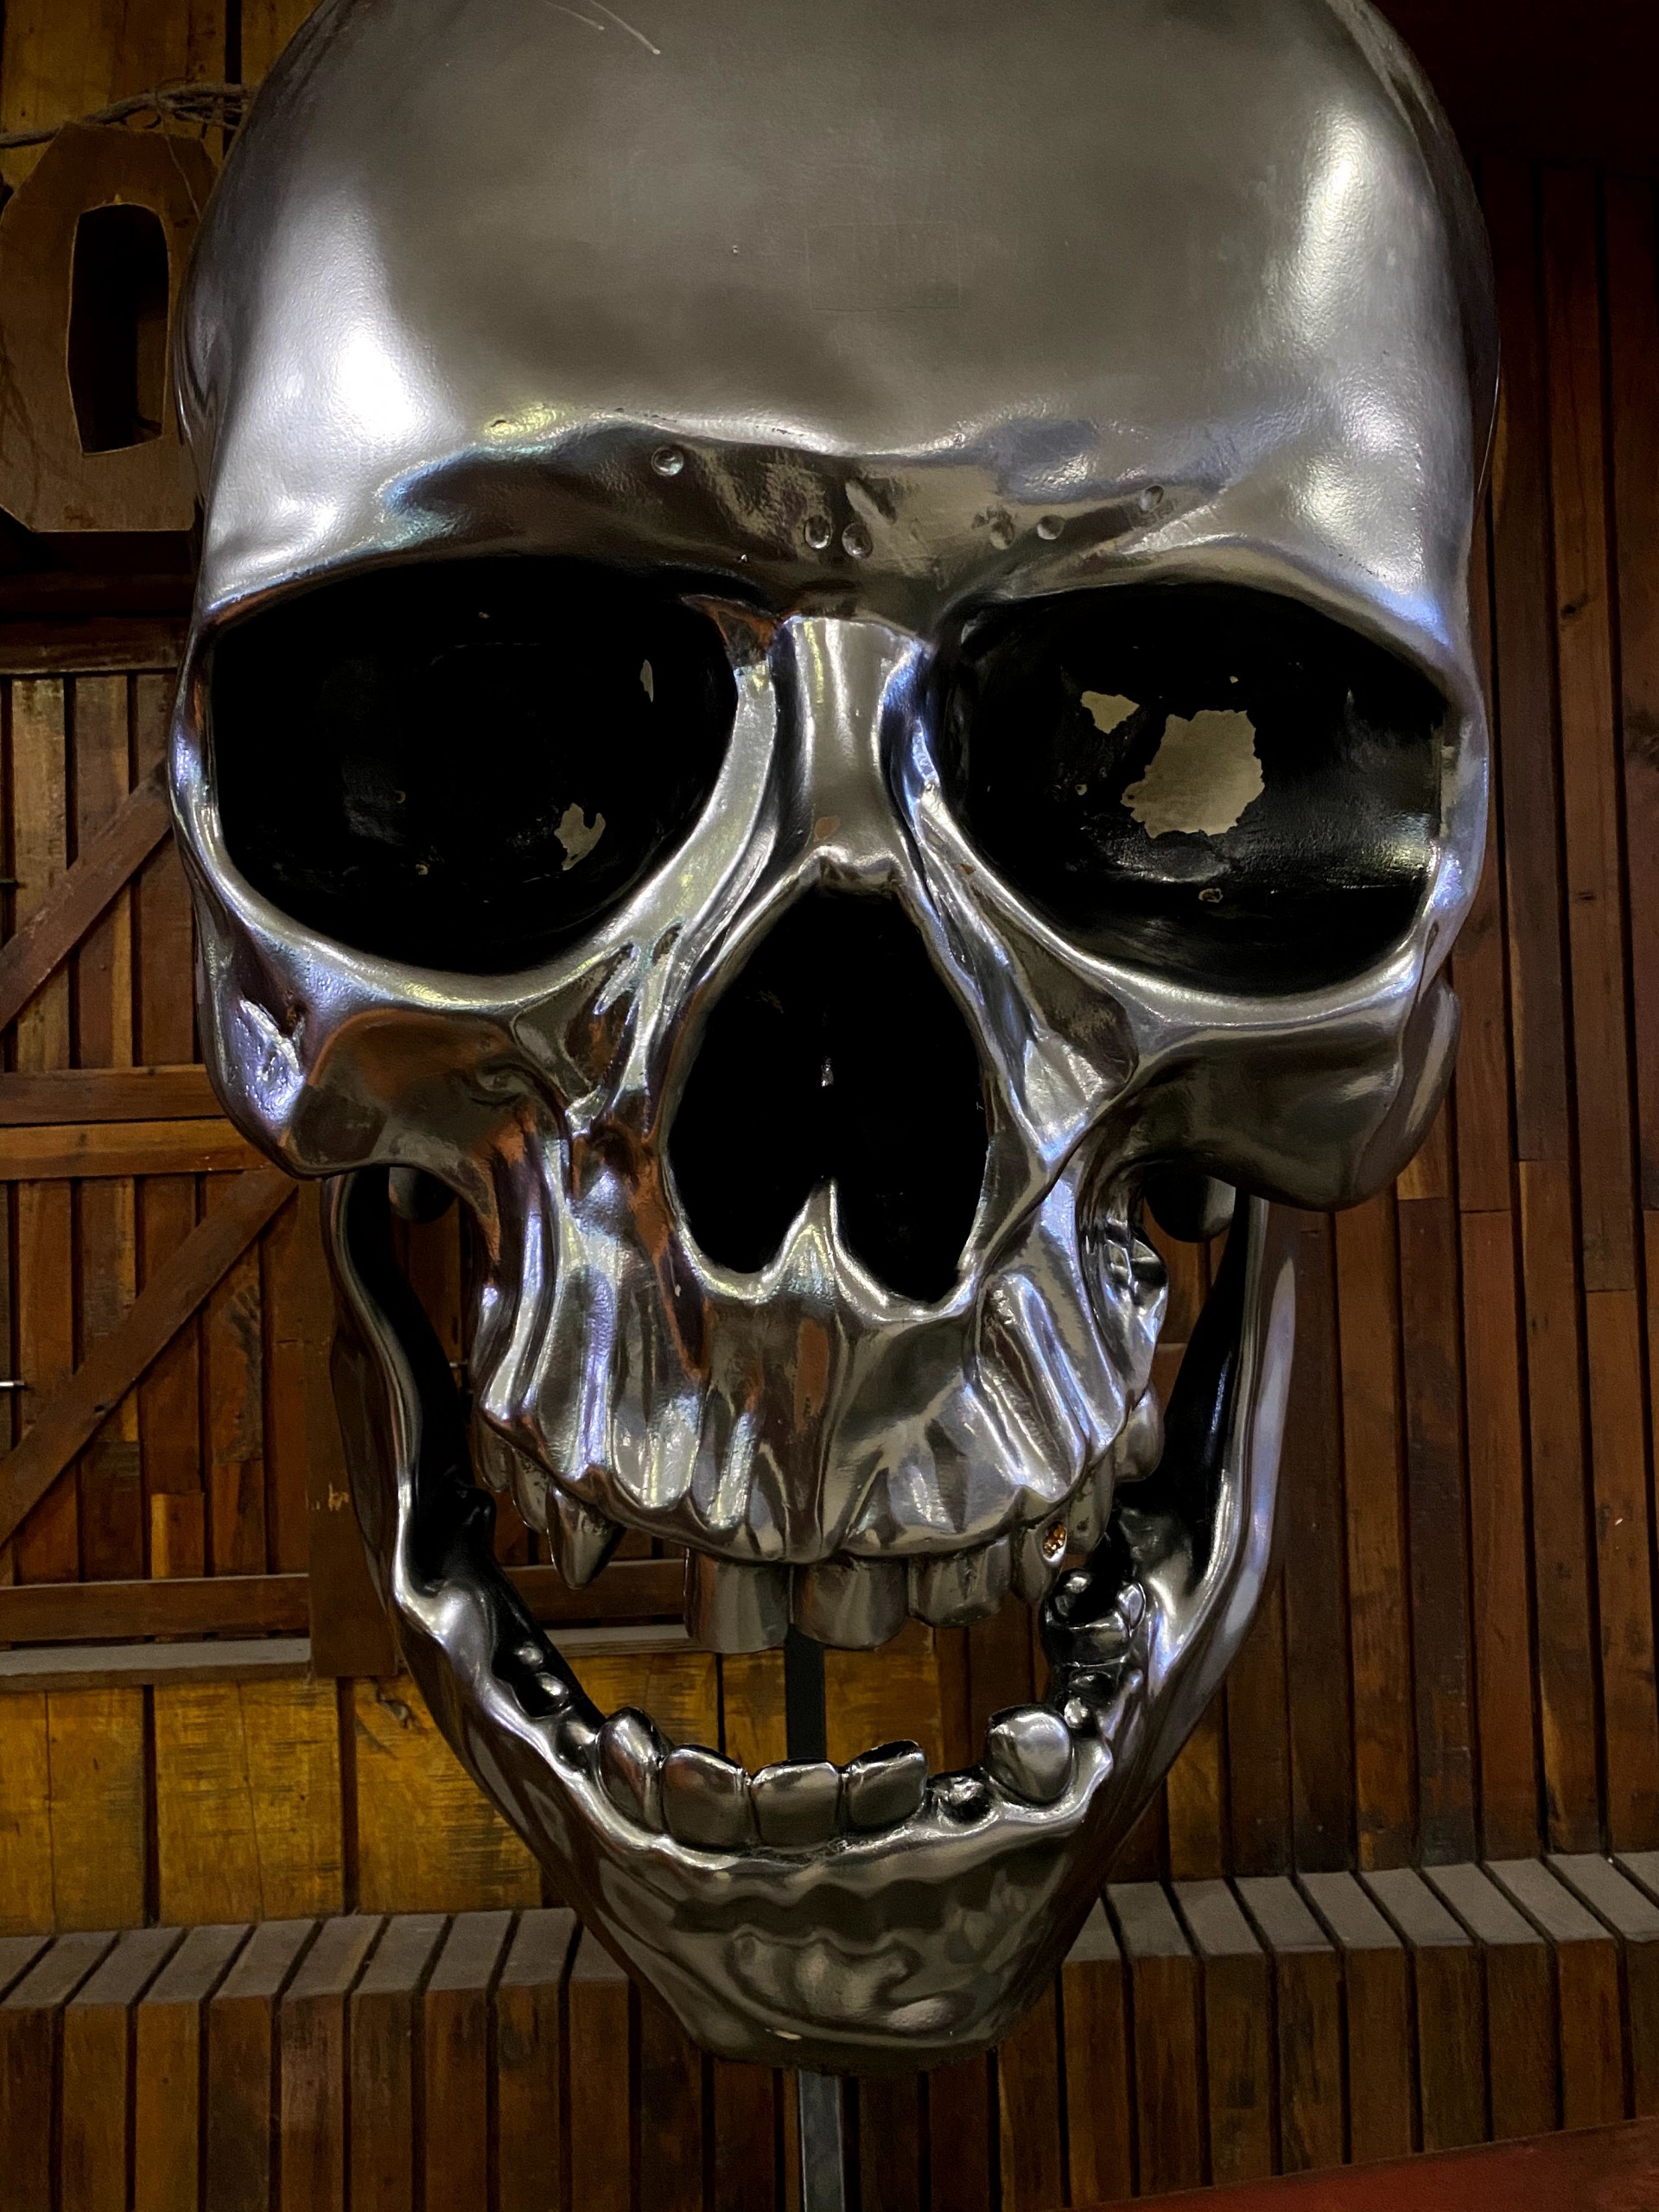 Metallic Skull